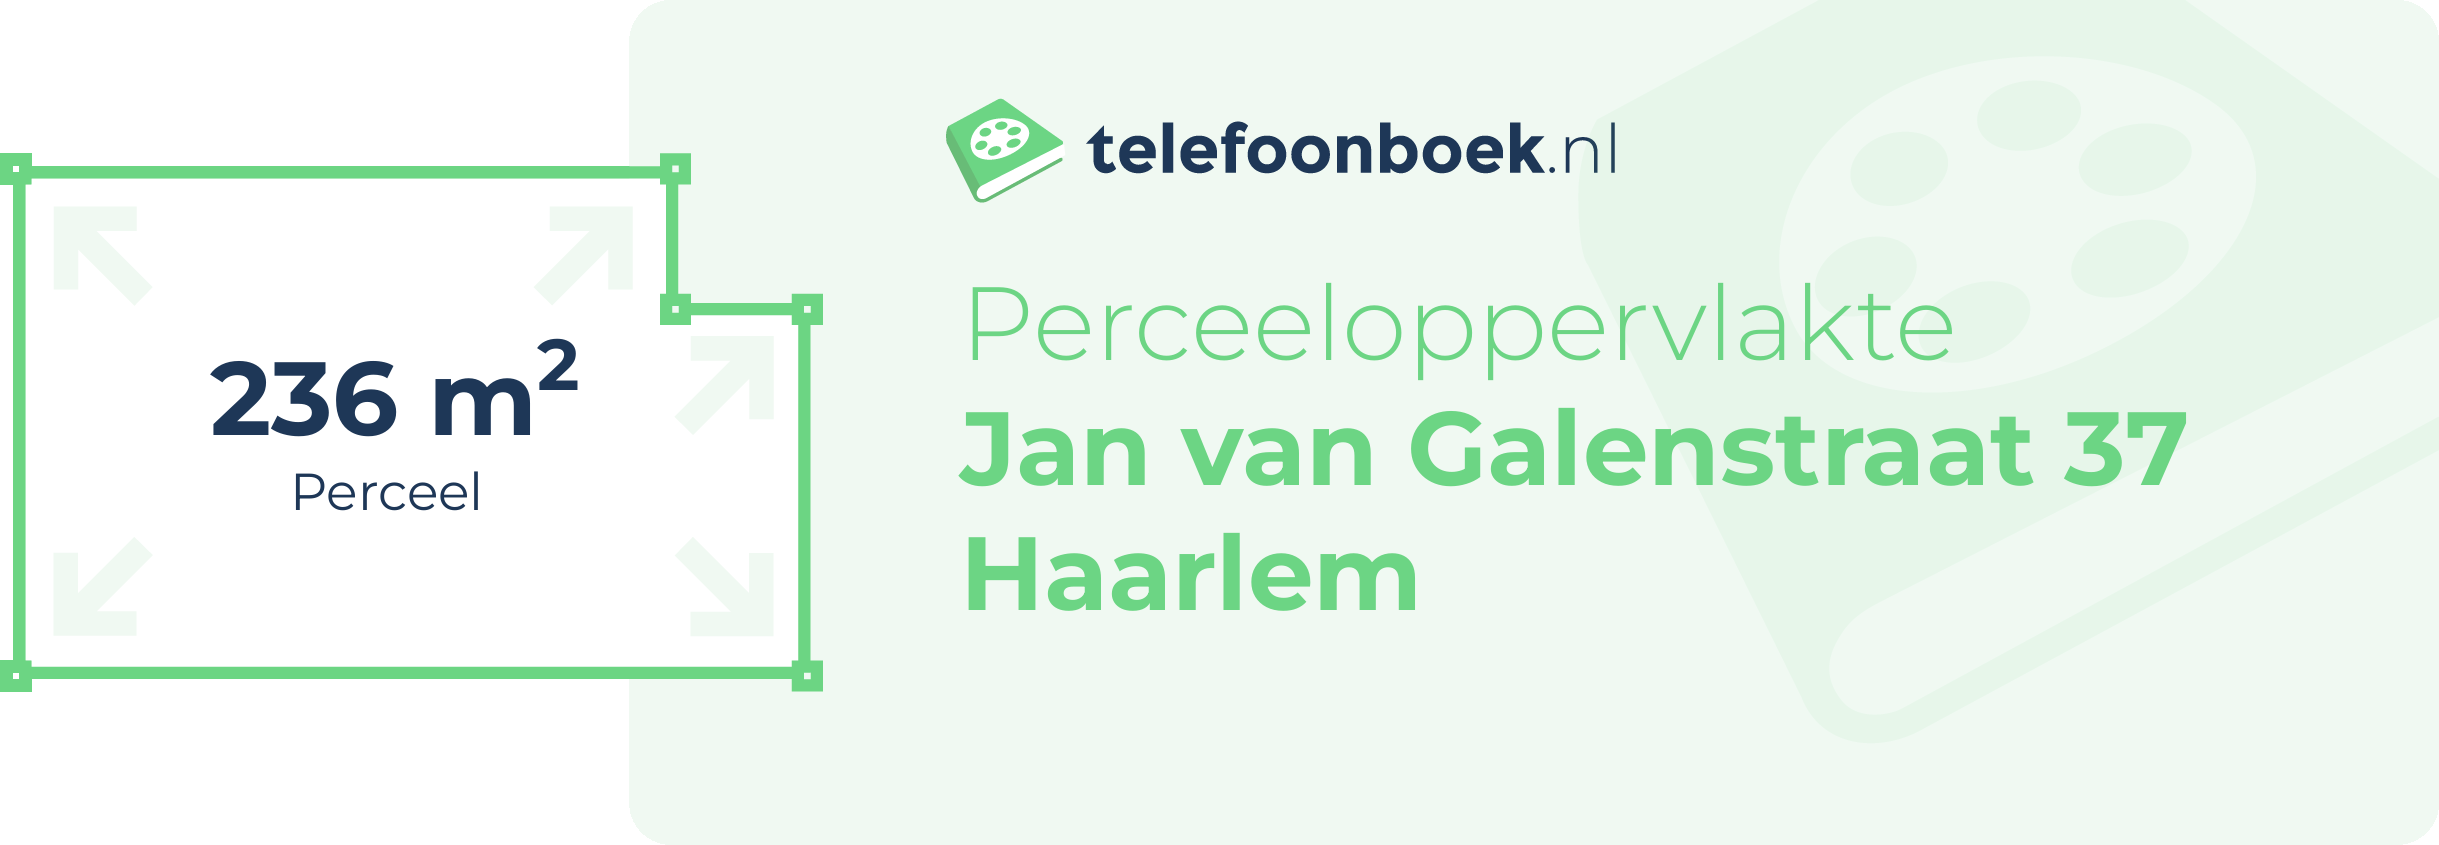 Perceeloppervlakte Jan Van Galenstraat 37 Haarlem